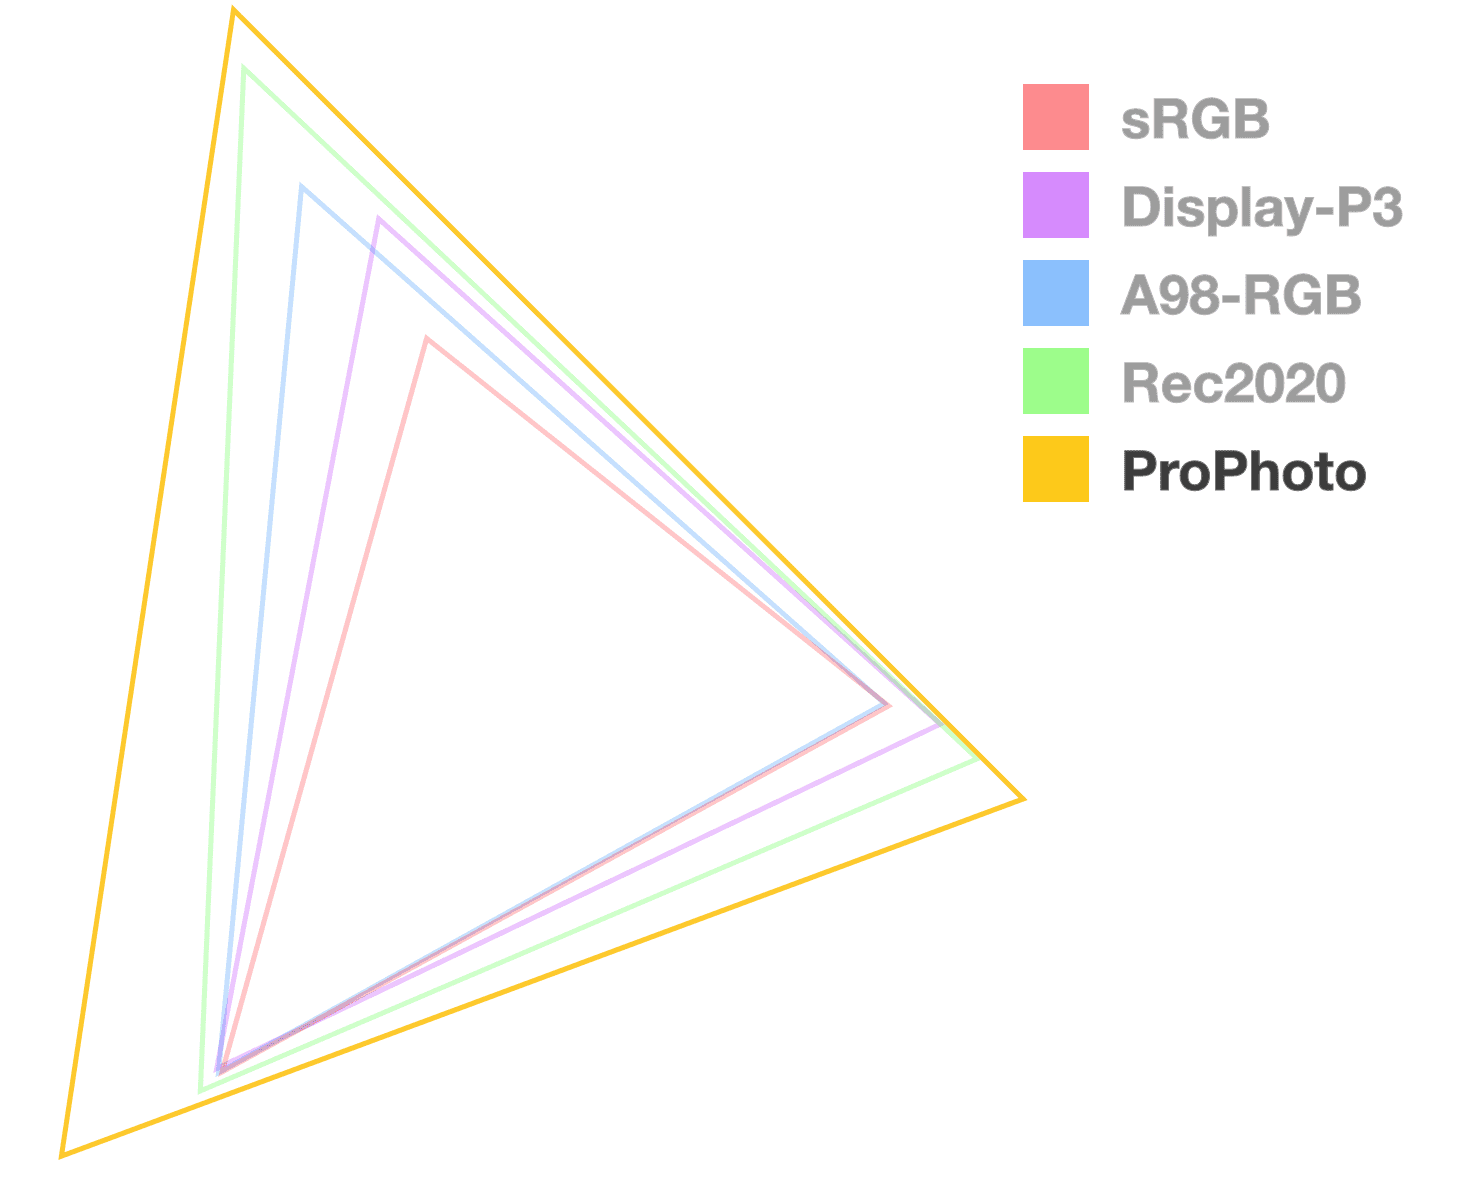 ProPhoto 三角形是唯一不透明的三角形，可用以視覺化方式呈現更大的範圍。似乎尺寸最大。